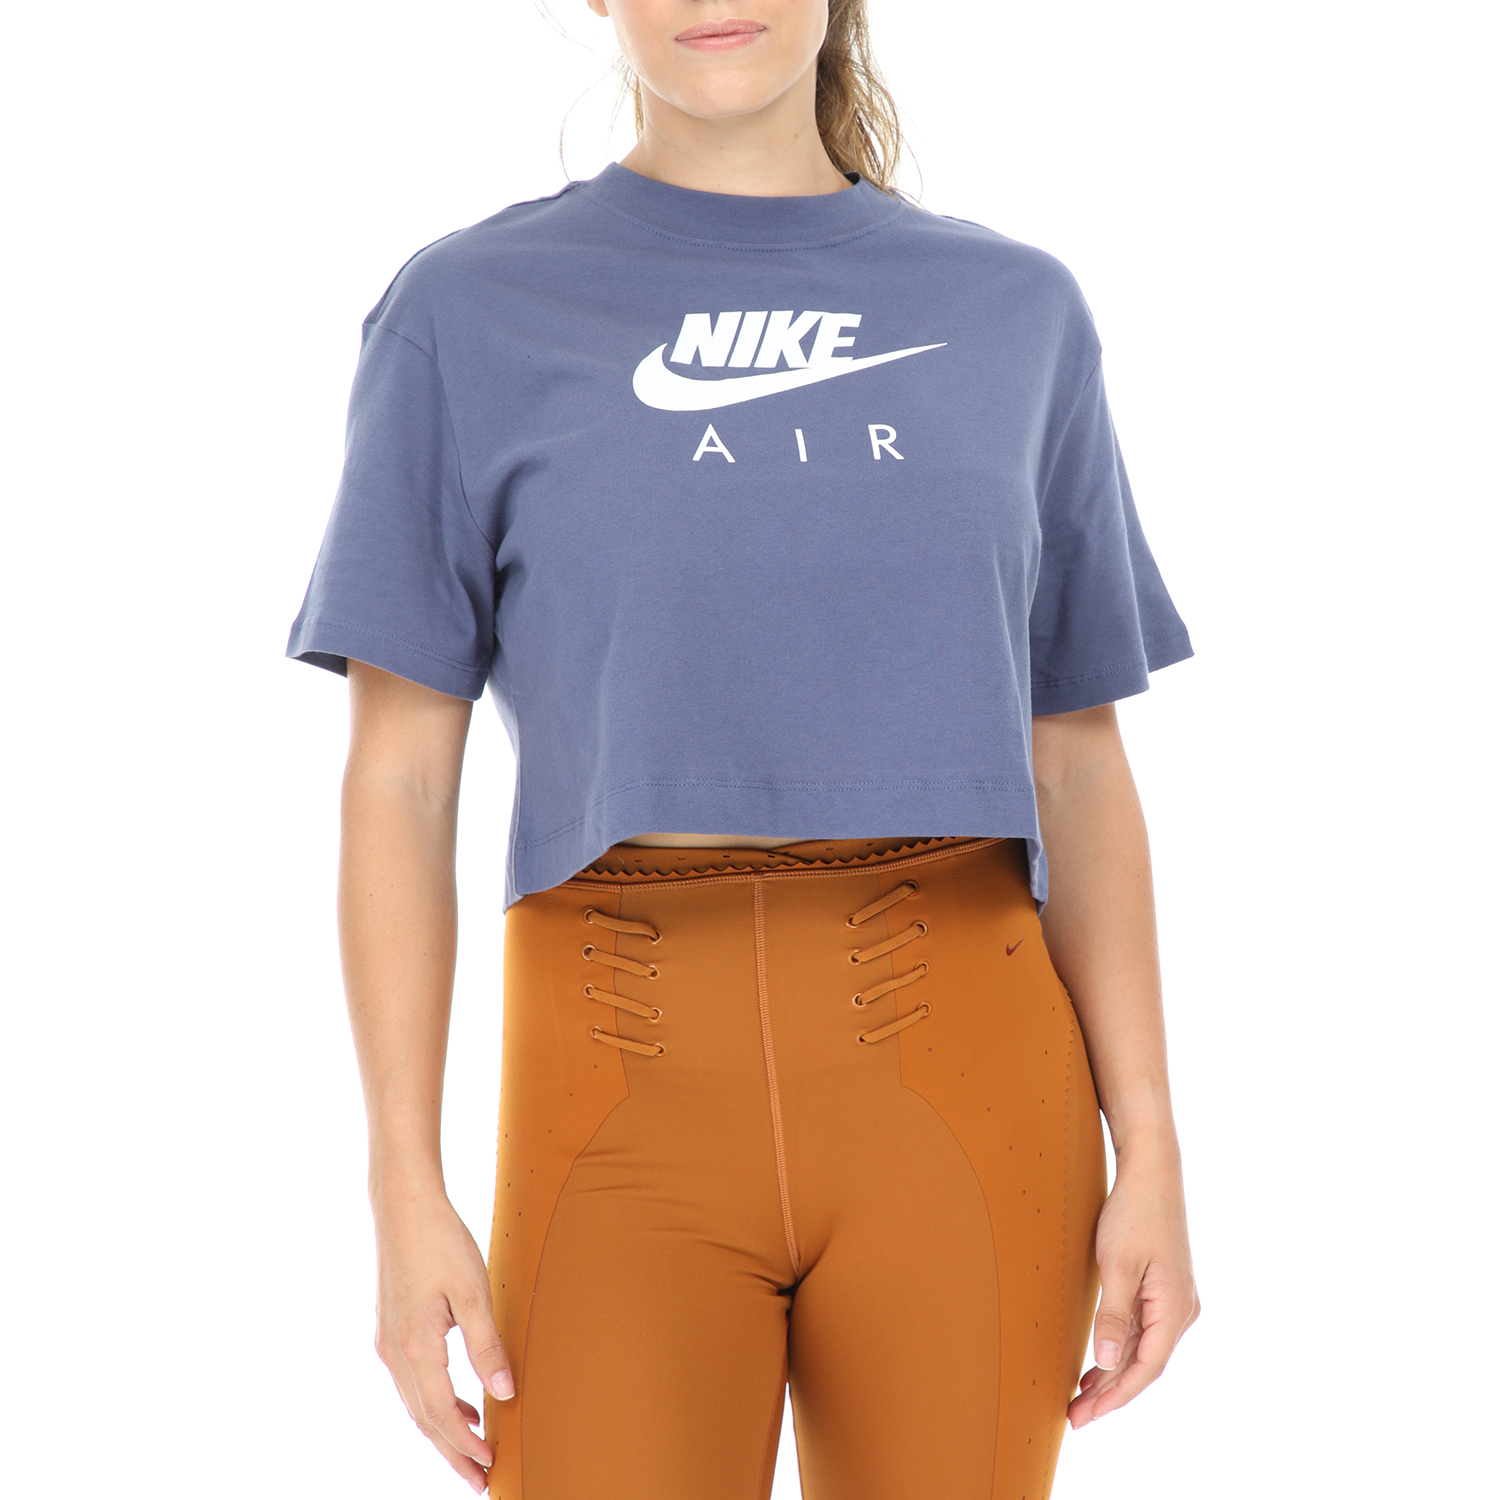 Γυναικεία/Ρούχα/Αθλητικά/T-shirt-Τοπ NIKE - Γυναικεία κοντομάνικη μπλούζα ΝΙΚΕ NSW AIR TOP μοβ